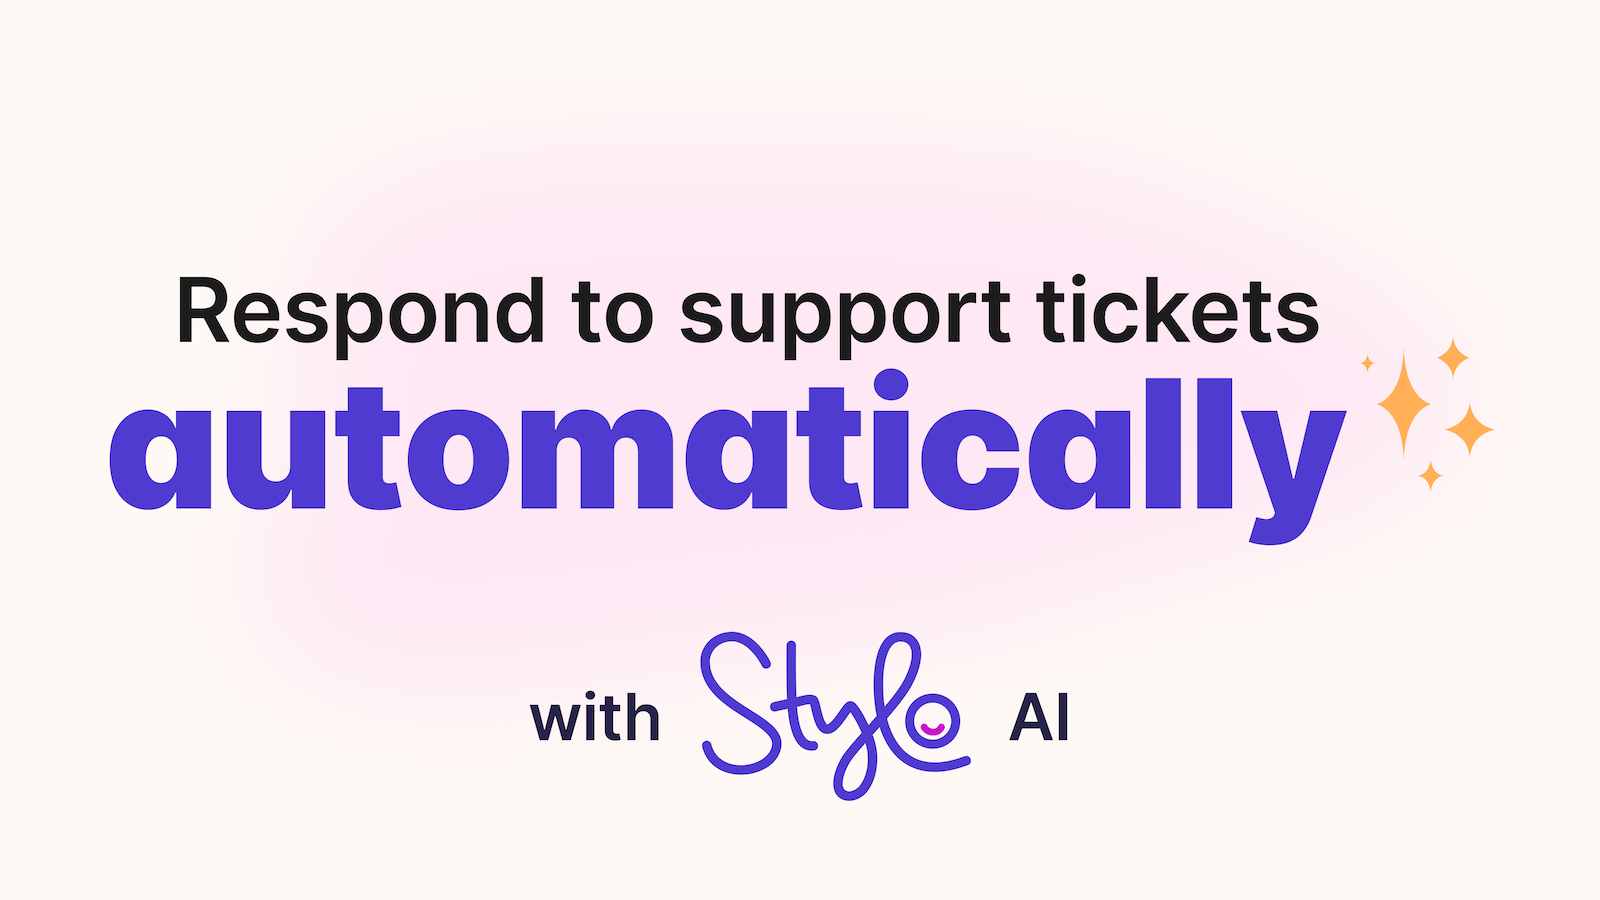 Répondez automatiquement aux tickets de support avec Stylo AI